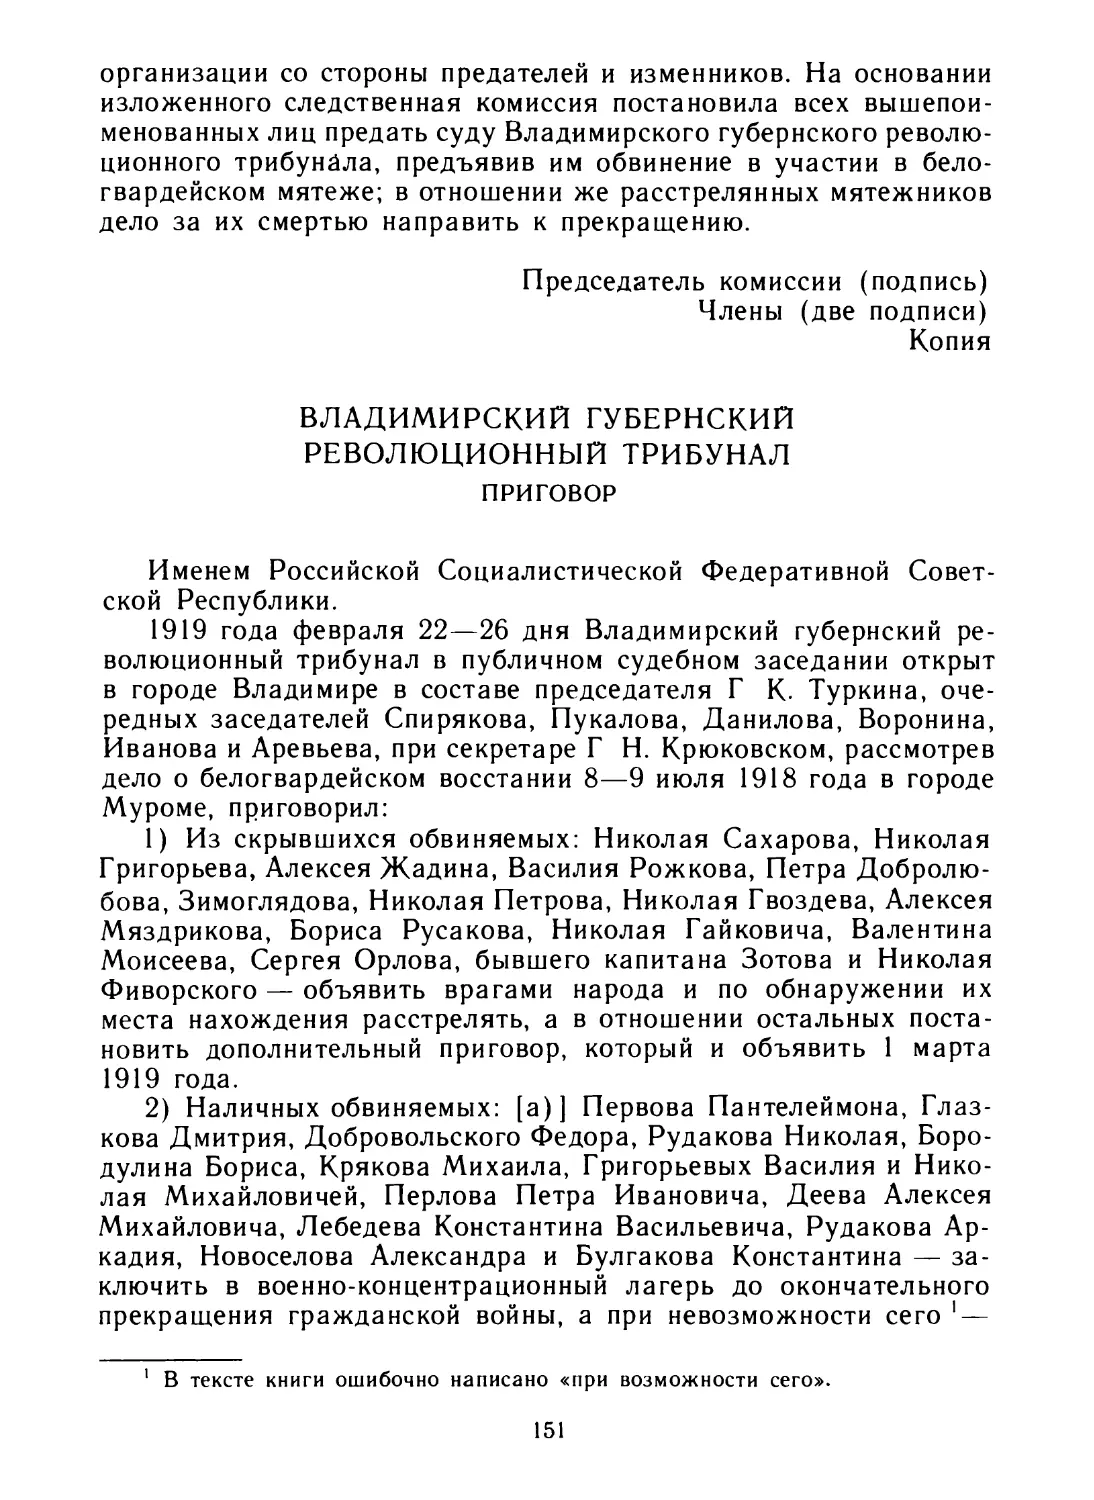 Приговор Владимирского губернского революционного трибунала